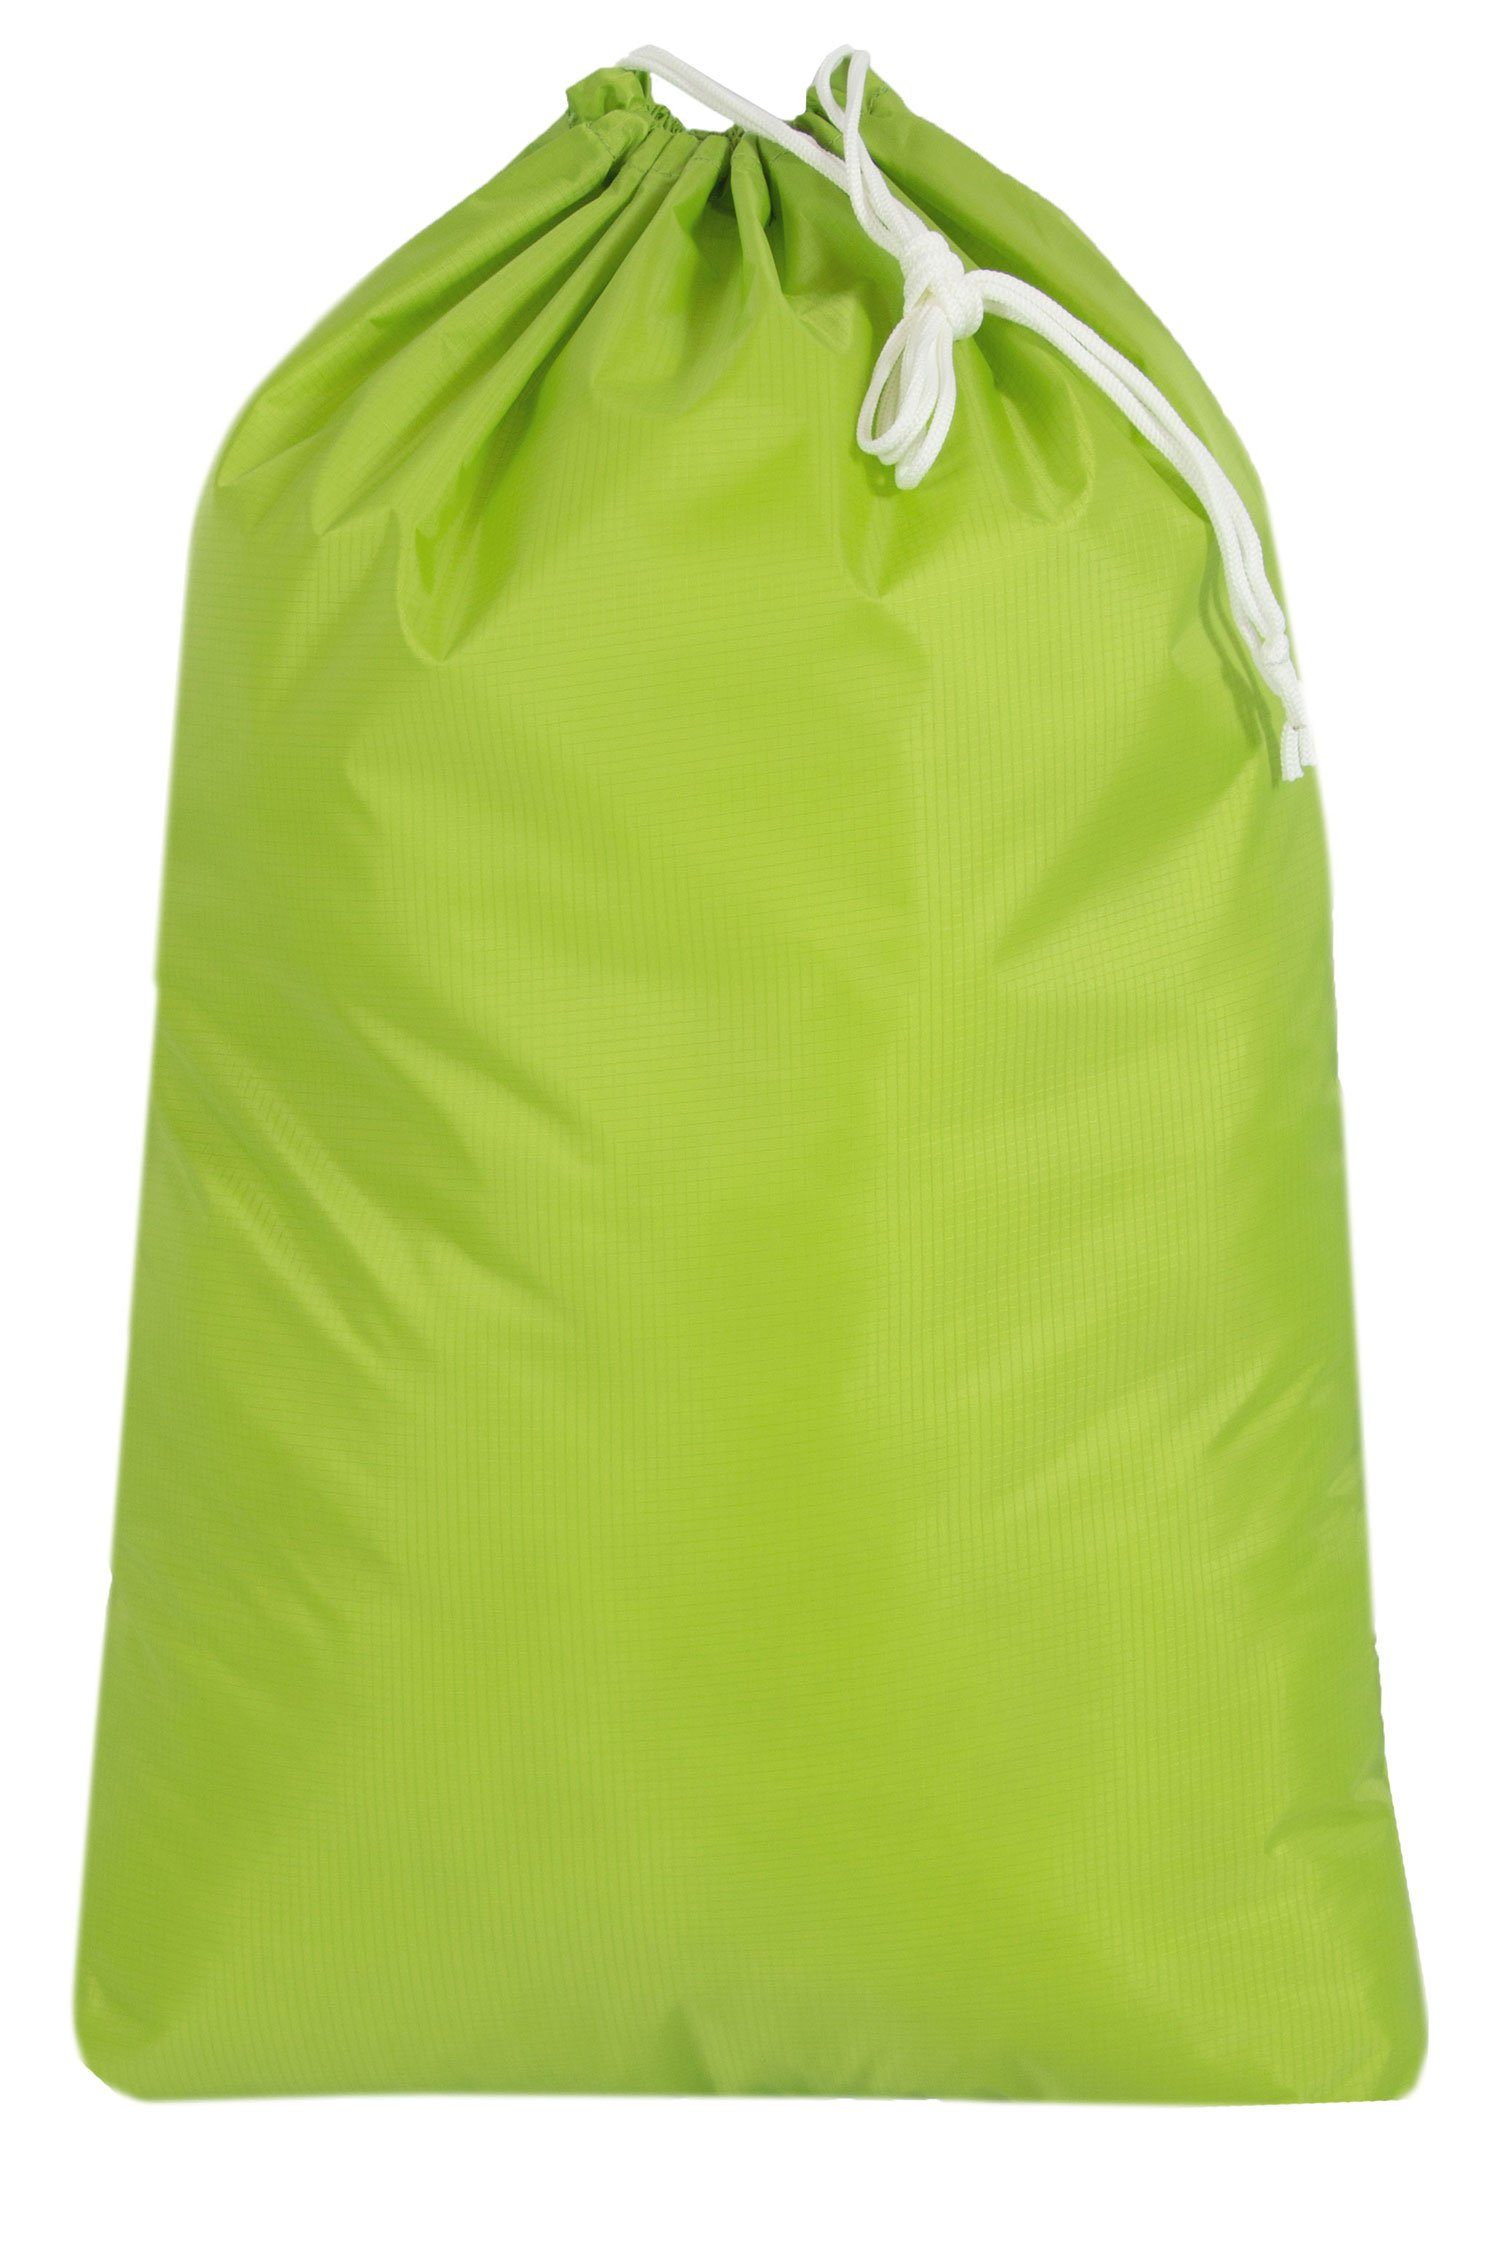 grün 100% Polyester, mit wasserabweisend Kordelzug, Wäschesack (1 ZOLLNER24 St),